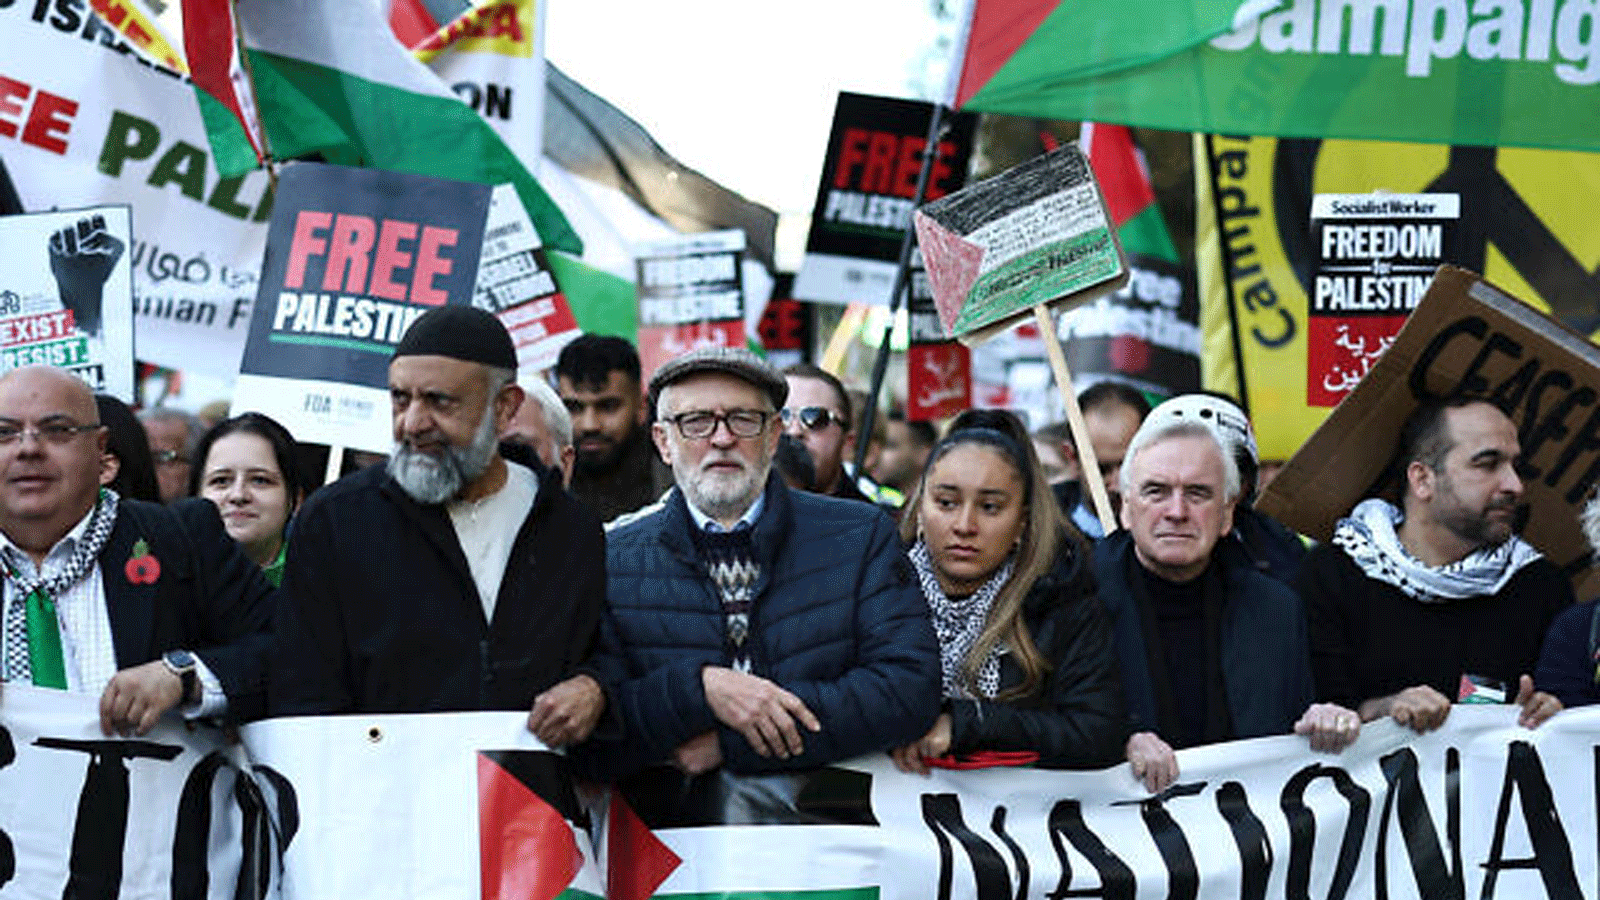 زعيم حزب العمال السابق جيريمي كوربين (في الوسط) ينضم إلى المتظاهرين باللافتات والأعلام المشاركين في “المسيرة الوطنية من أجل فلسطين” في وسط لندن في 11 نوفمبر(تشرين الثاني) 2023